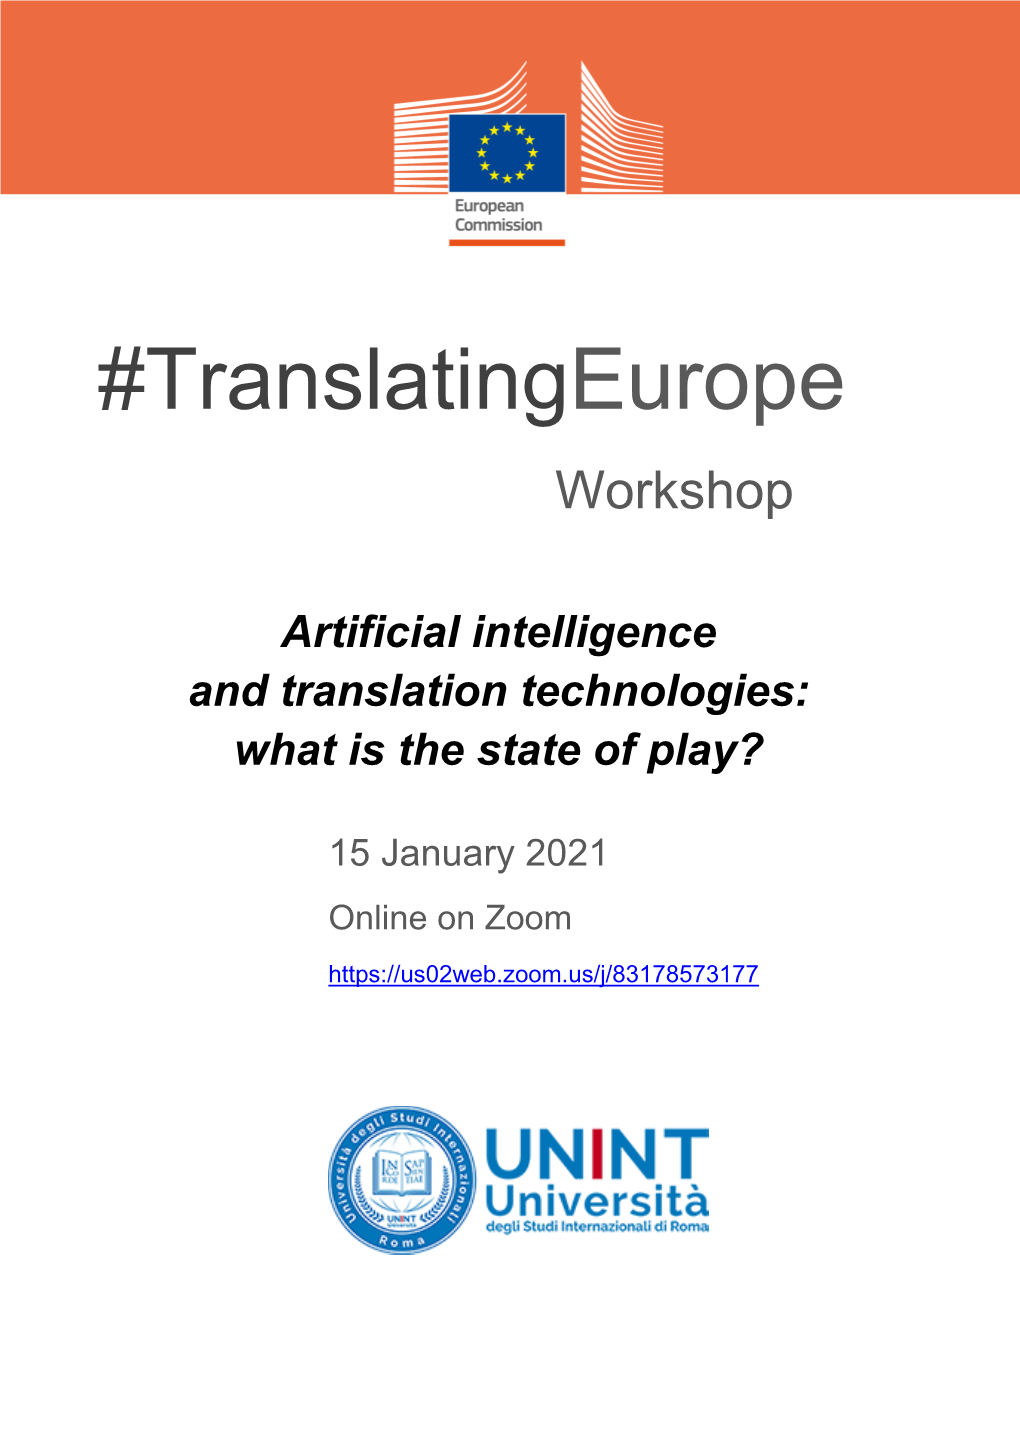 Translatingeurope Workshop